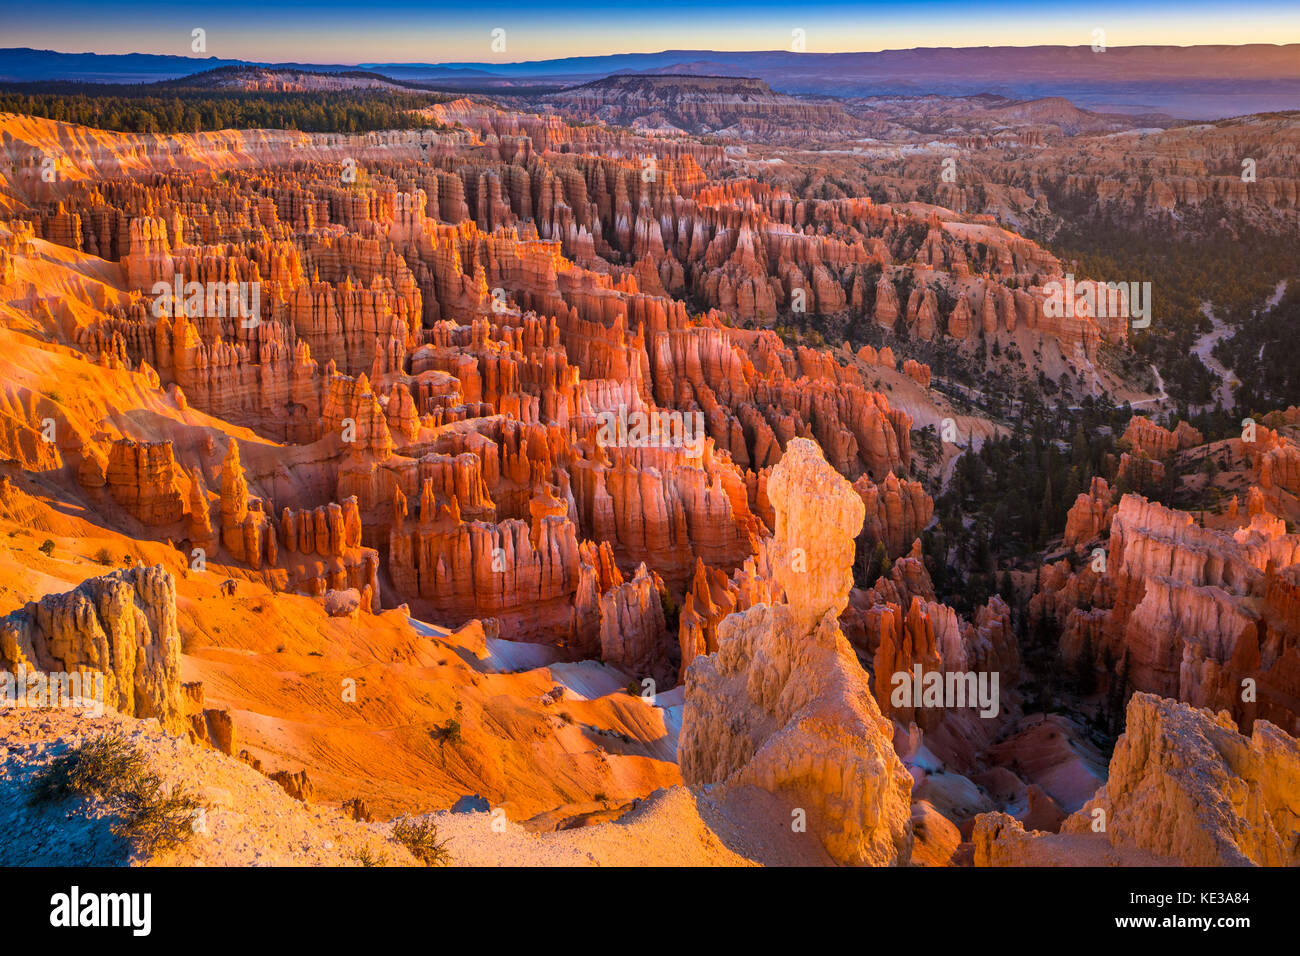 Bryce Canyon National Park, una extensa reserva en el sur de Utah, es conocido por su color carmesí hoodoos, que son formaciones de roca con forma de aguja. Foto de stock